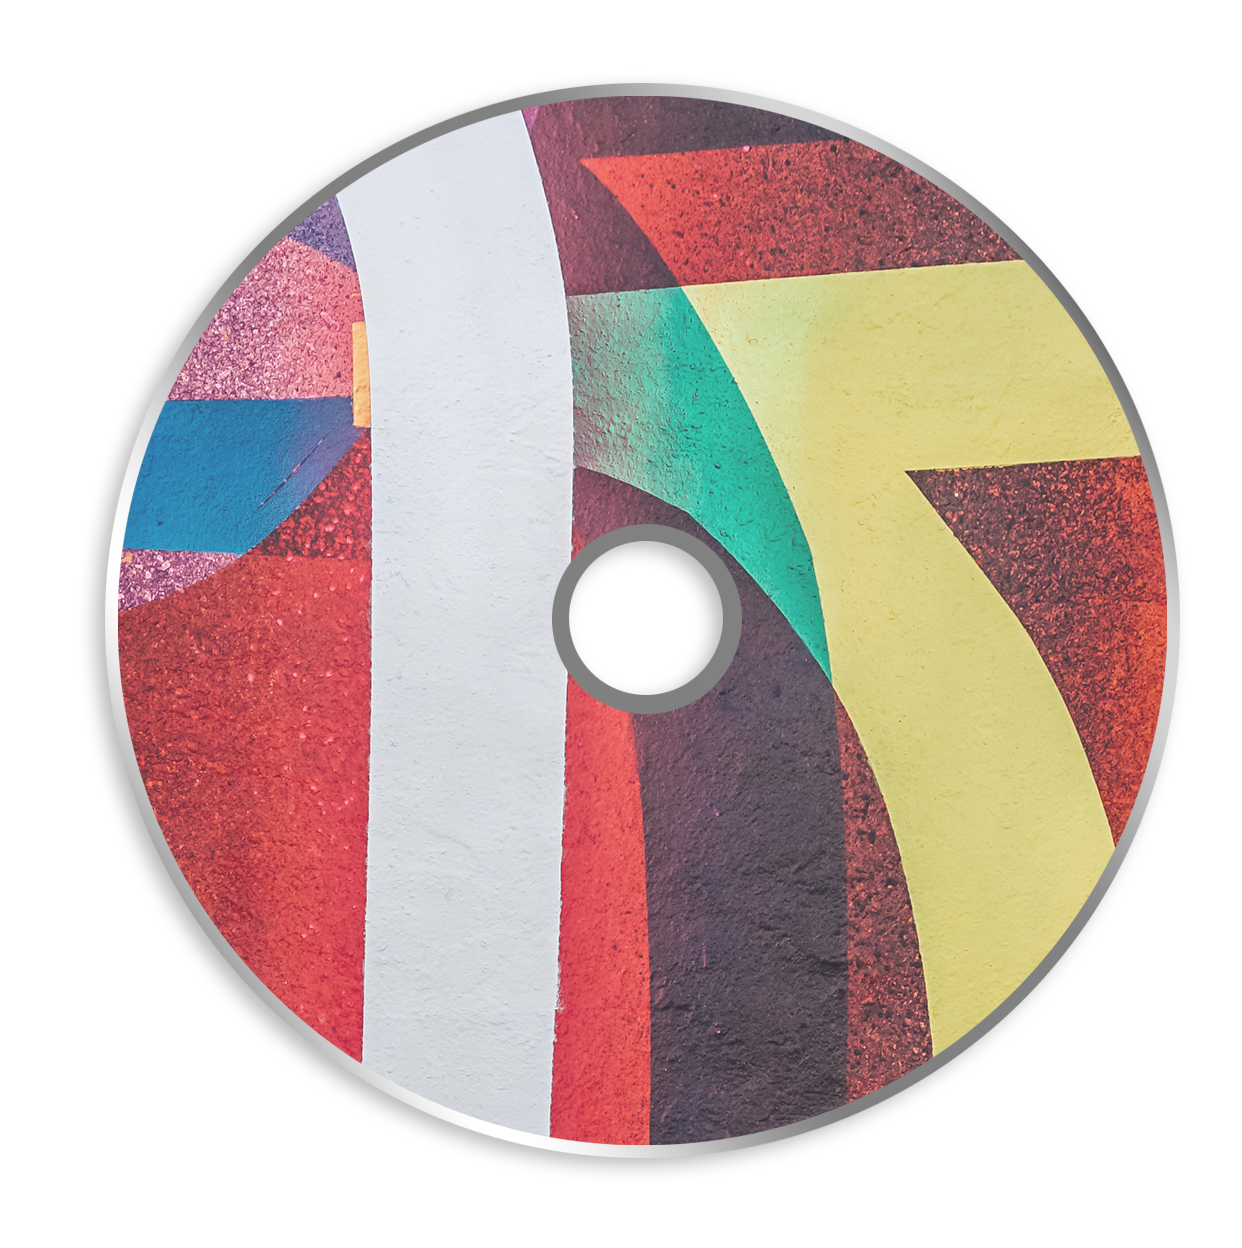 Obraz Drukowanie czystych płyt CD Inkjet 4c + zaklejanie